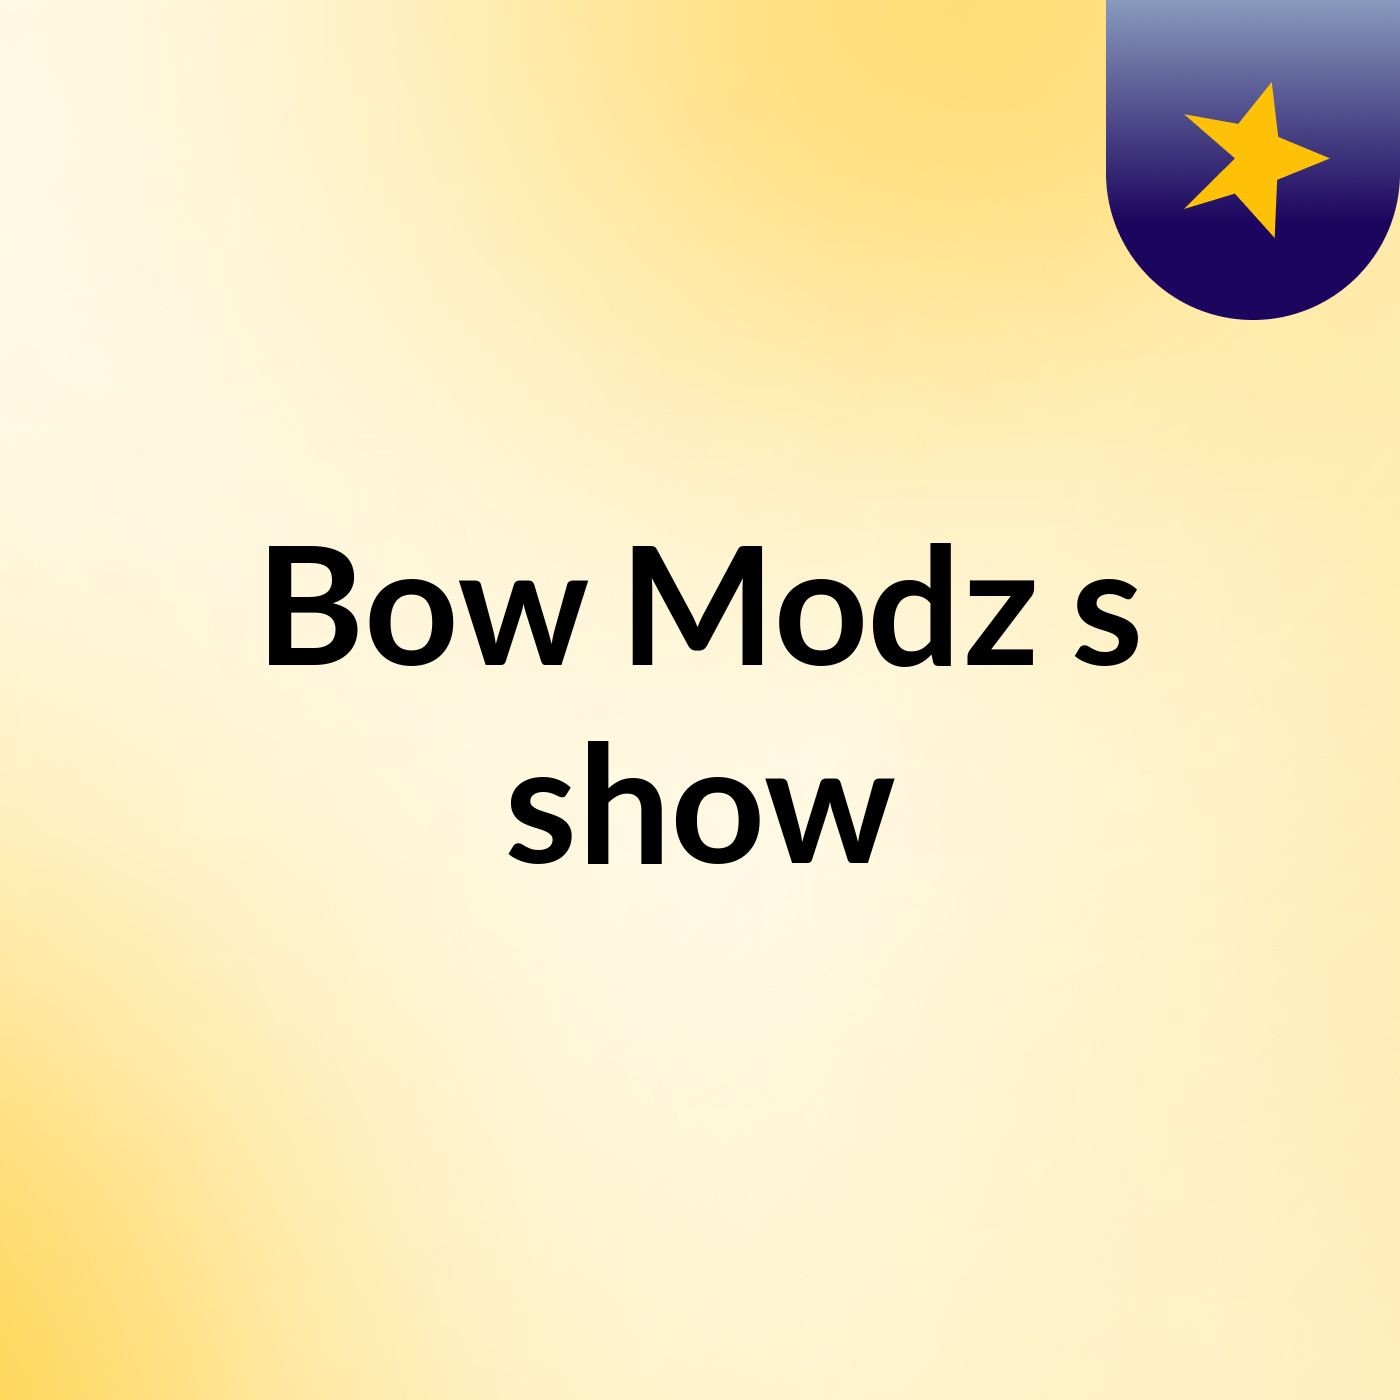 Bow Modz's show